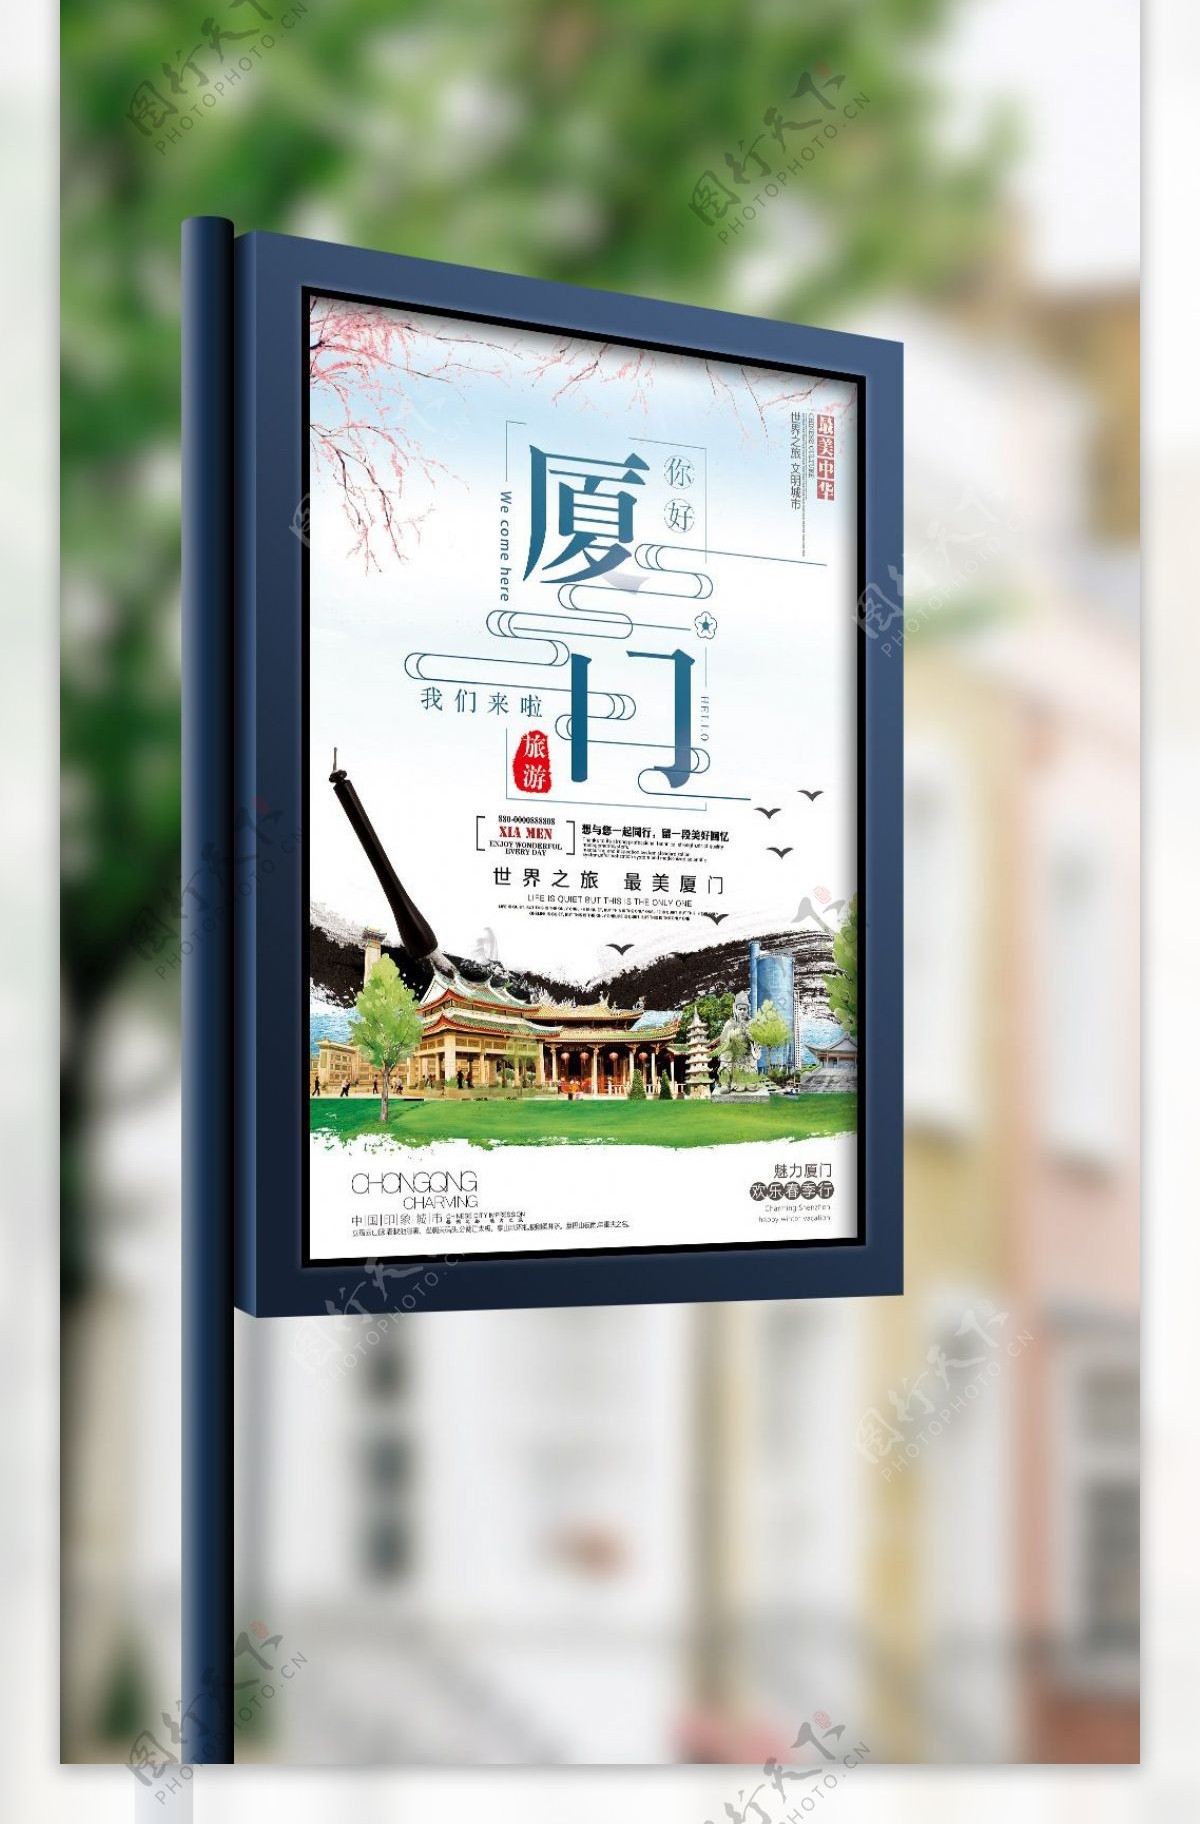 2018年蓝色中国风简洁厦门旅游海报